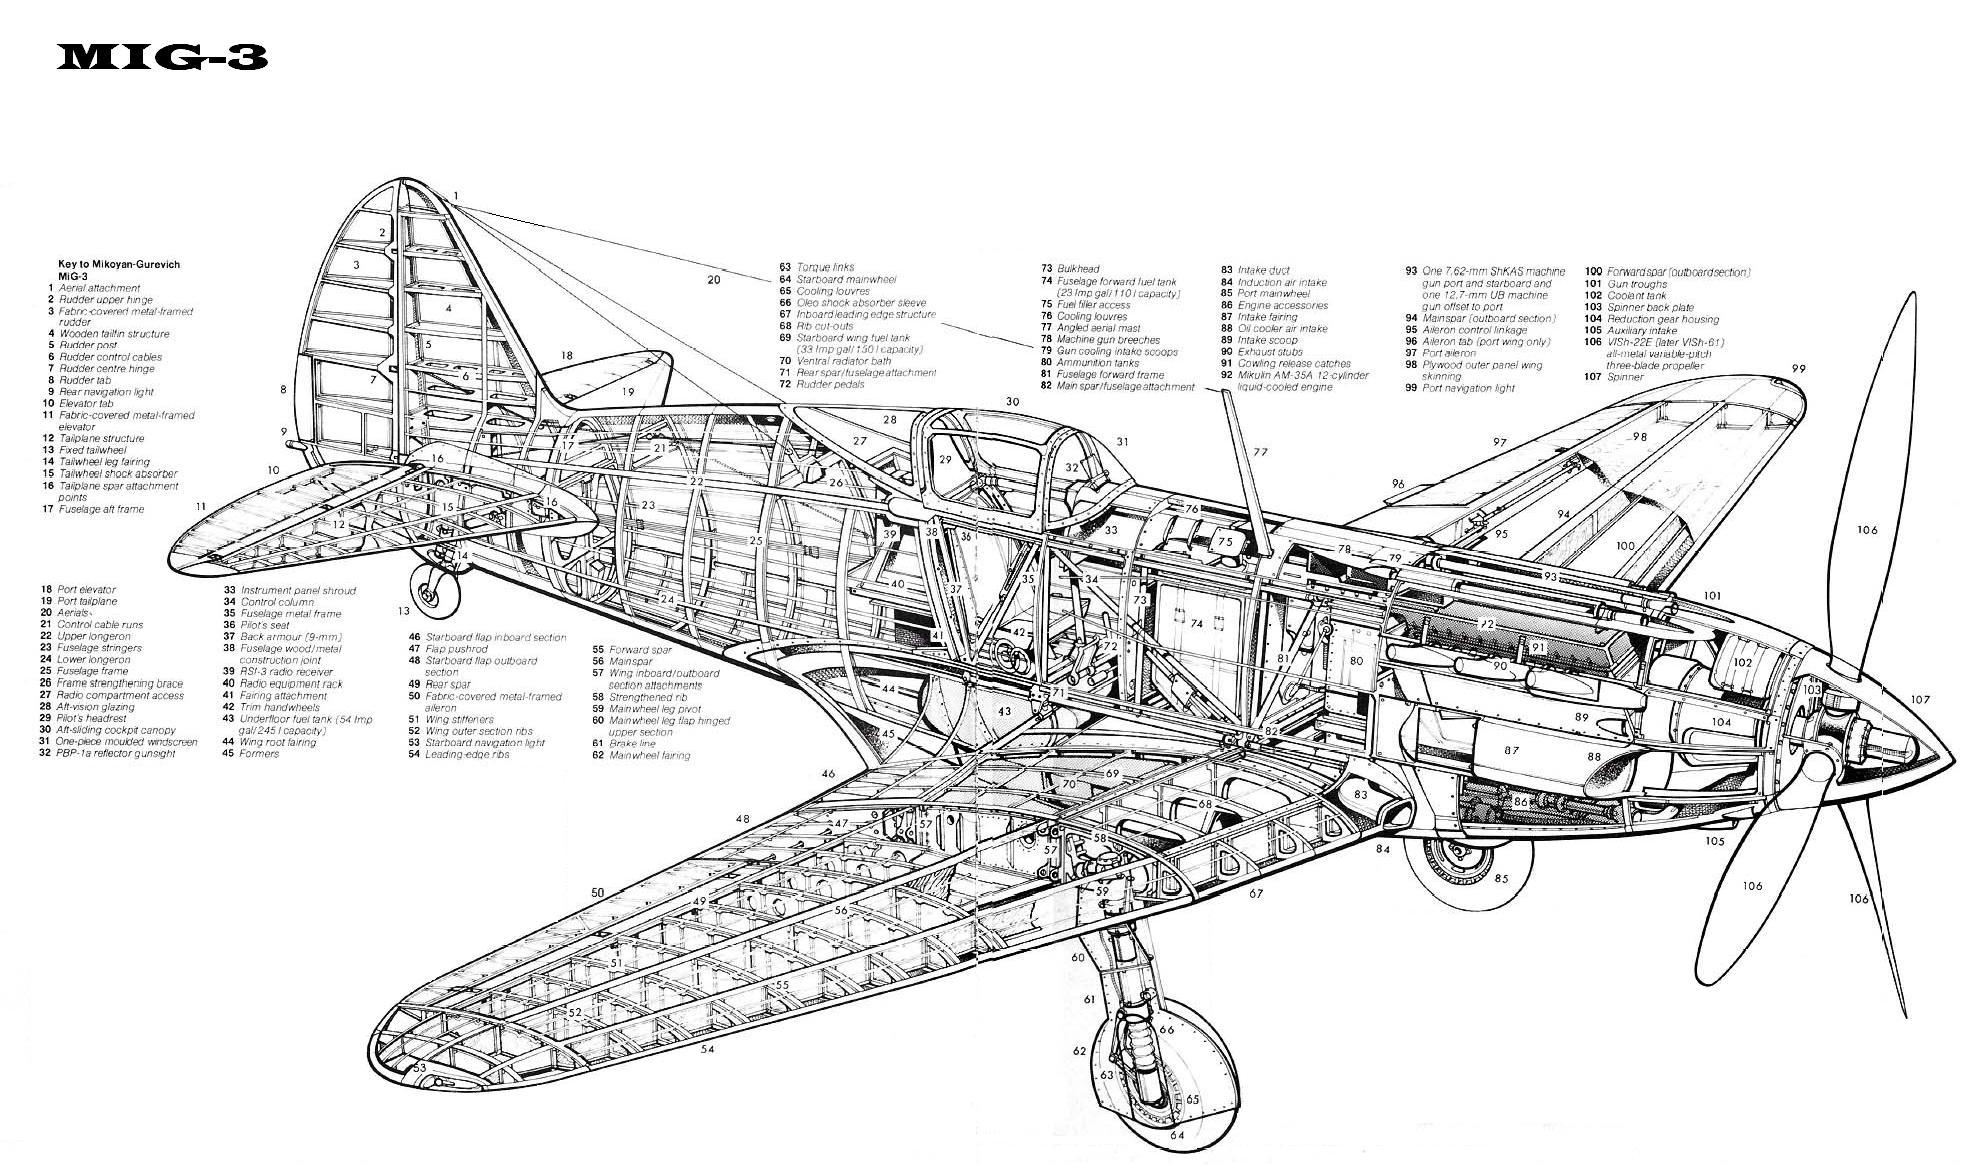 MIG-3 | Aircraft of World War II - WW2Aircraft.net Forums